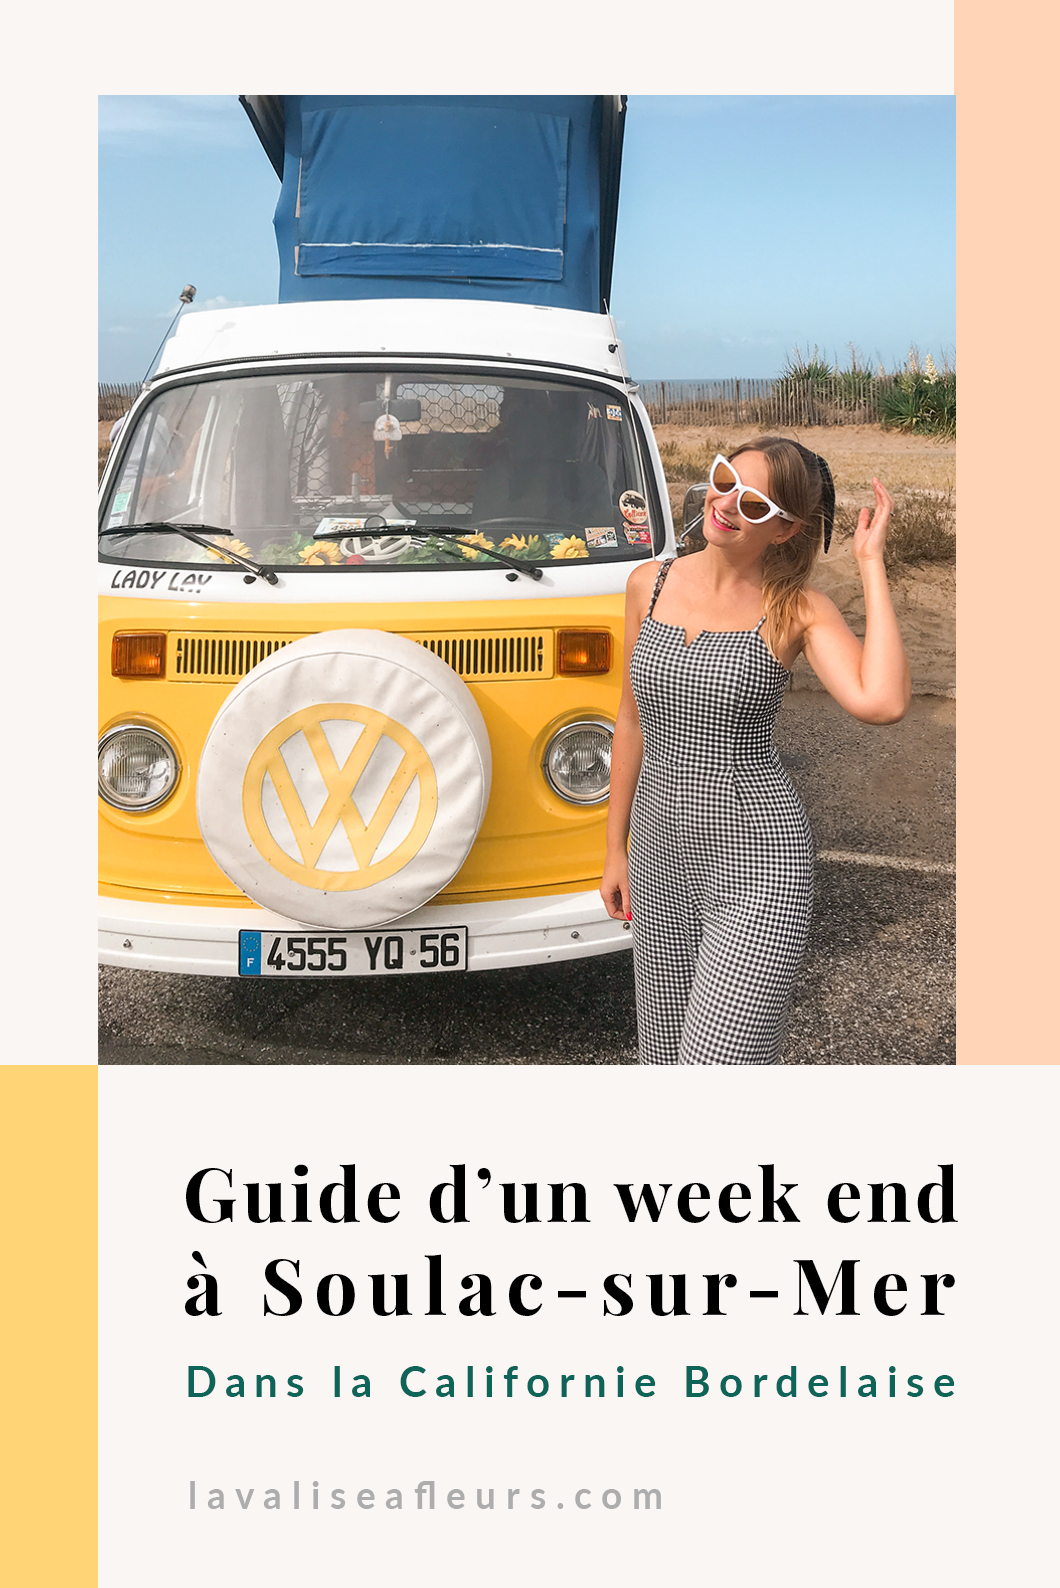 Guide d’un week end à Soulac-sur-Mer dans la Californie Bordelaise